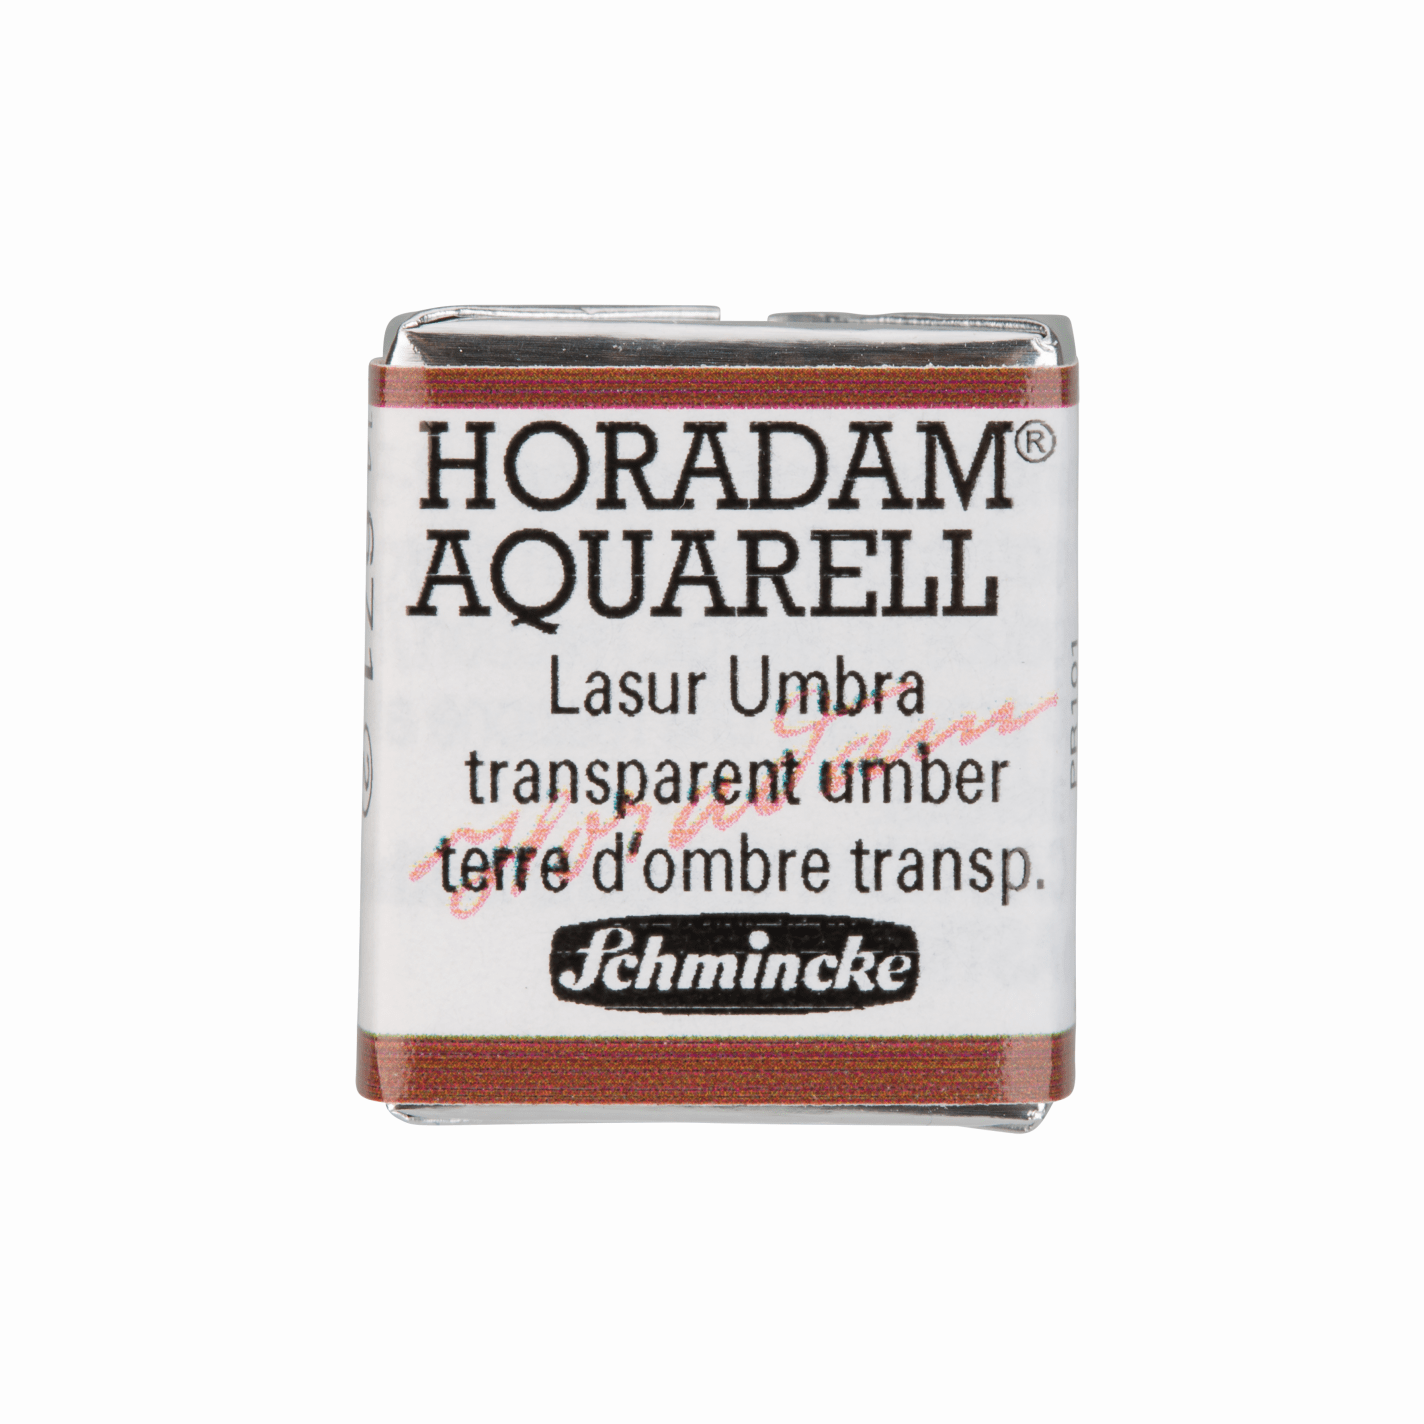 Schmincke Horadam Aquarell pans 1/2 pan Transparent Umber